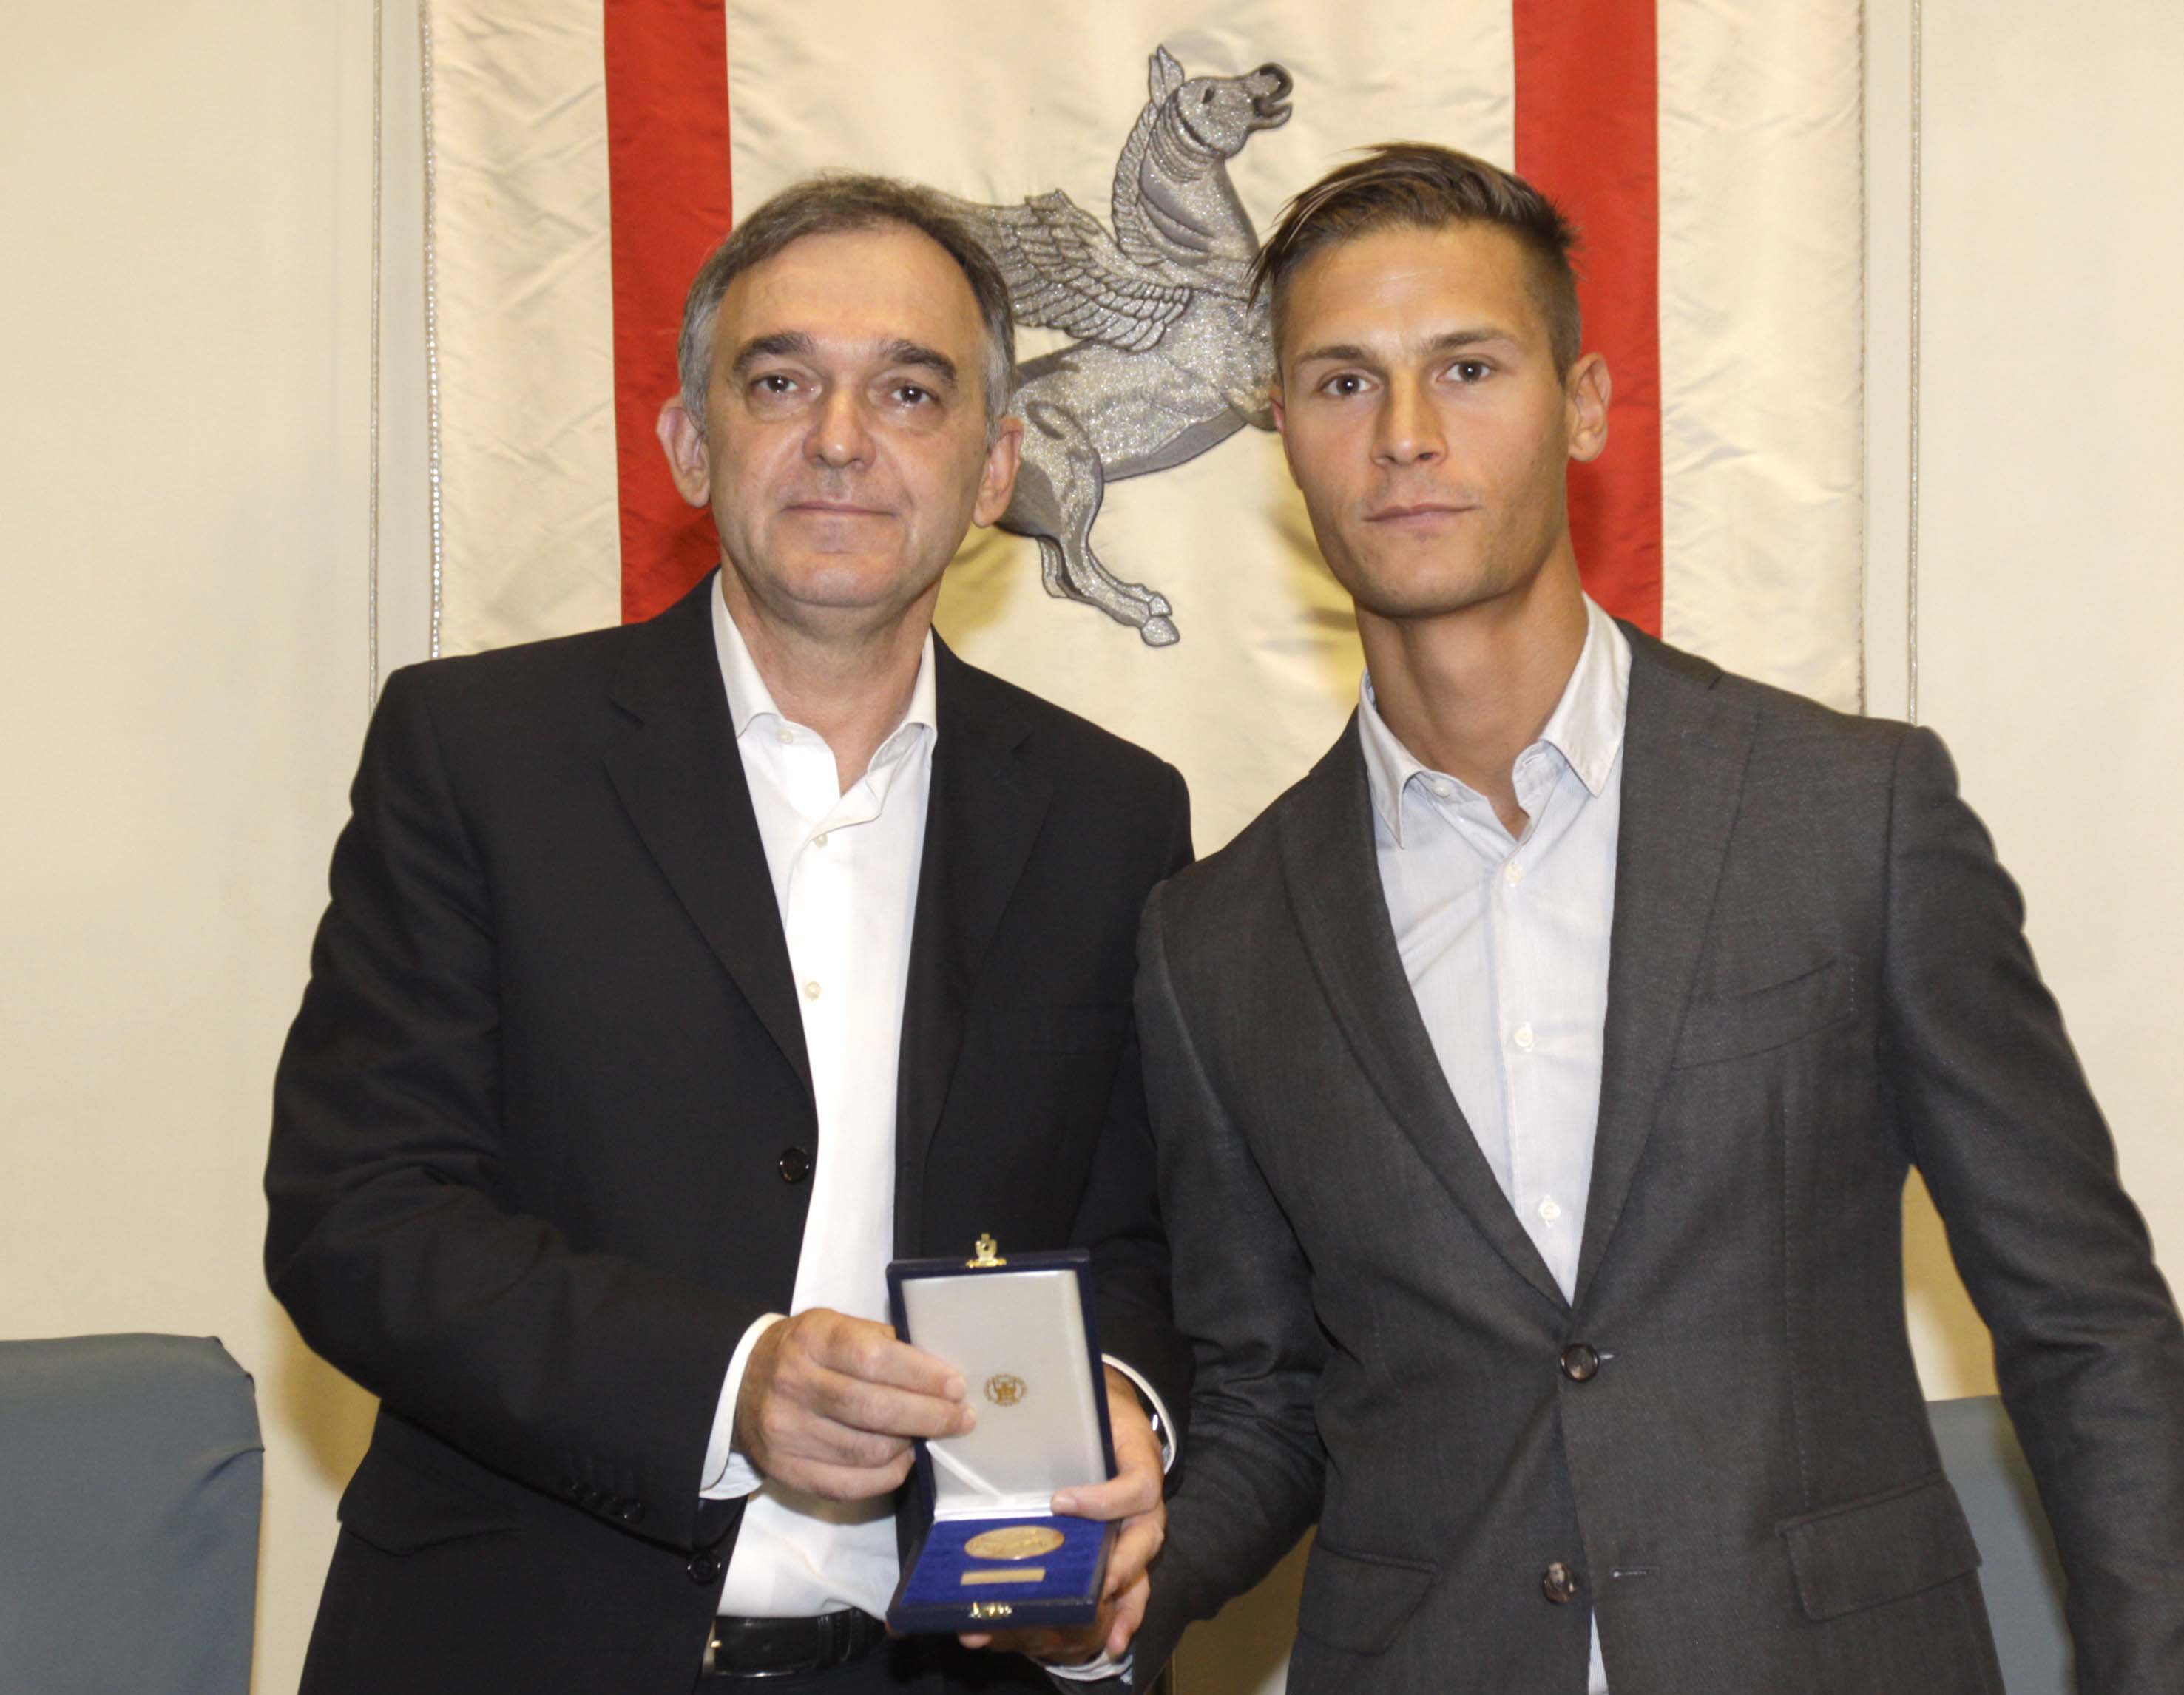 Medaglia d'Oro Pegaso alla memoria del Prof. Enzo Catarsi_0603.JPG